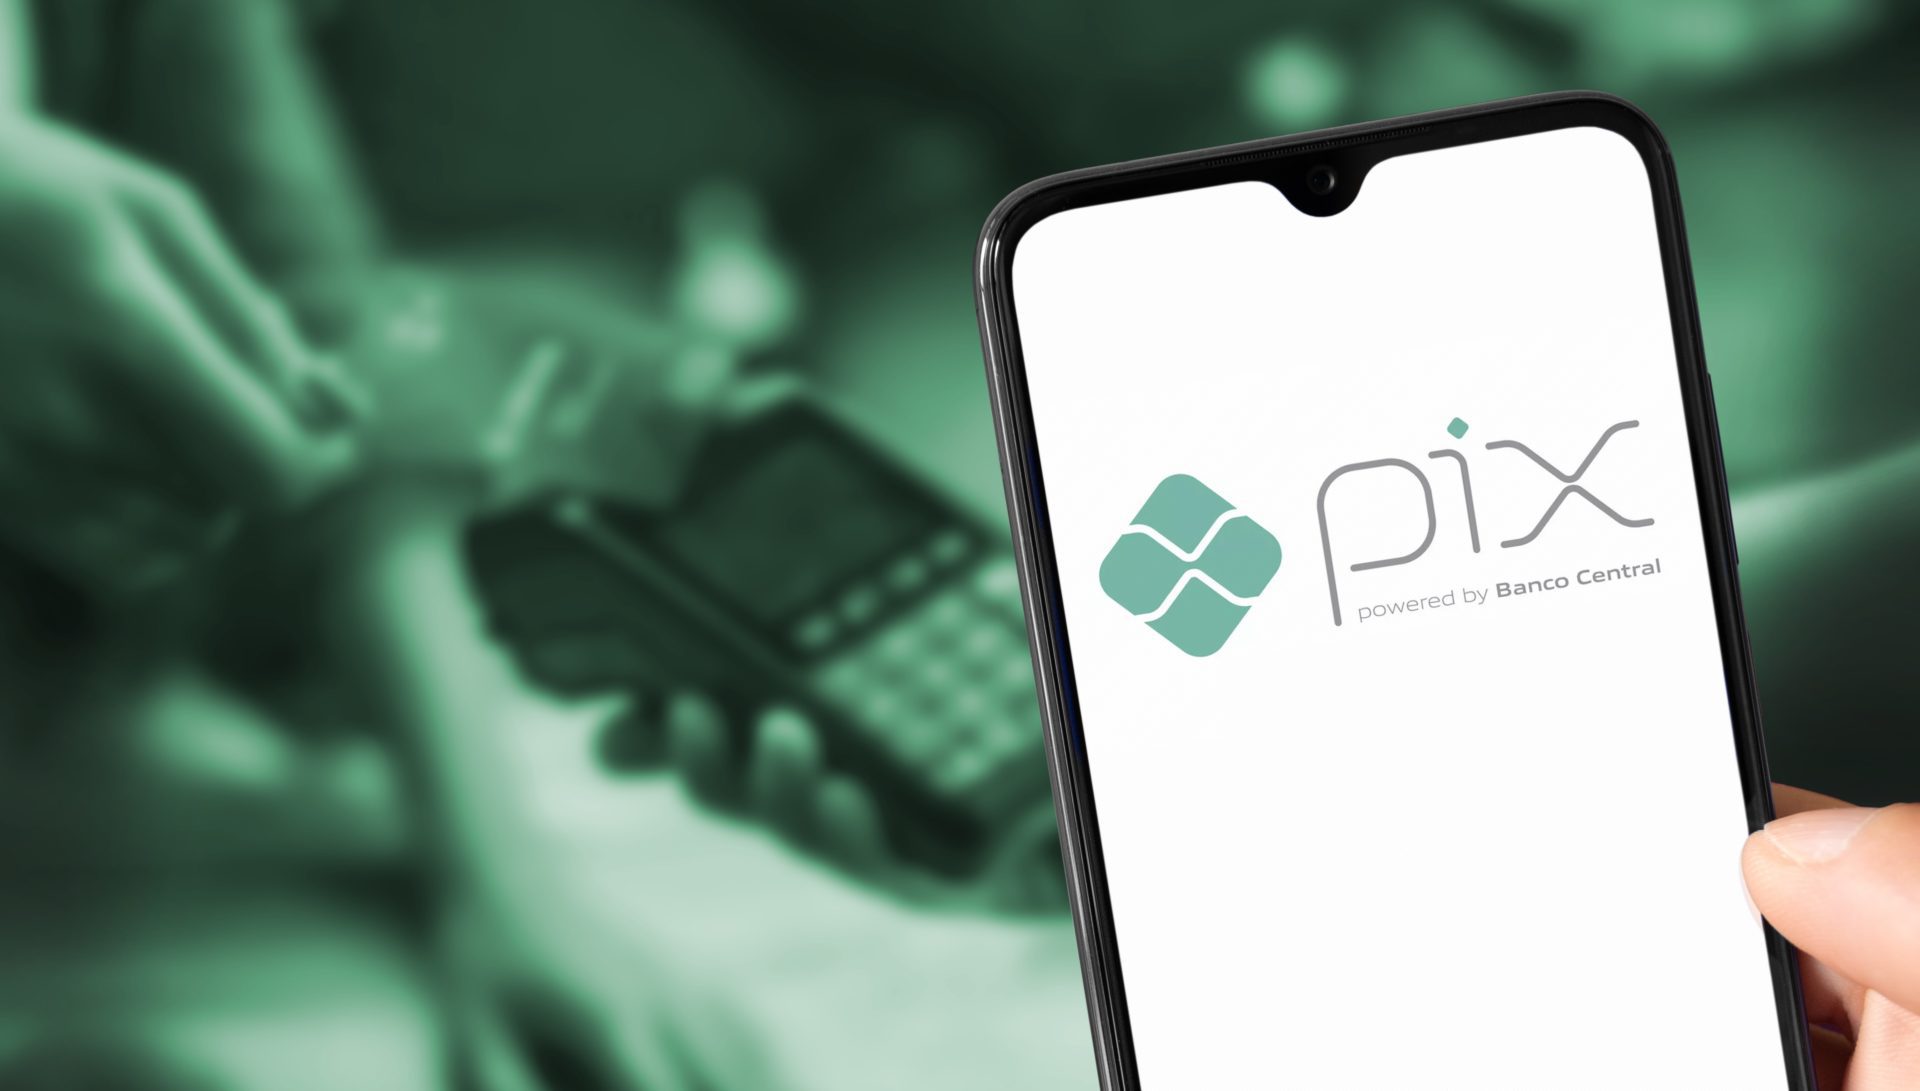 Imagem de fundo esta desfoca, mostrando uma pessoa passando cartão em uma maquininha de crédito, na frente da imagem aparece um celular com a logomarca do Pix.